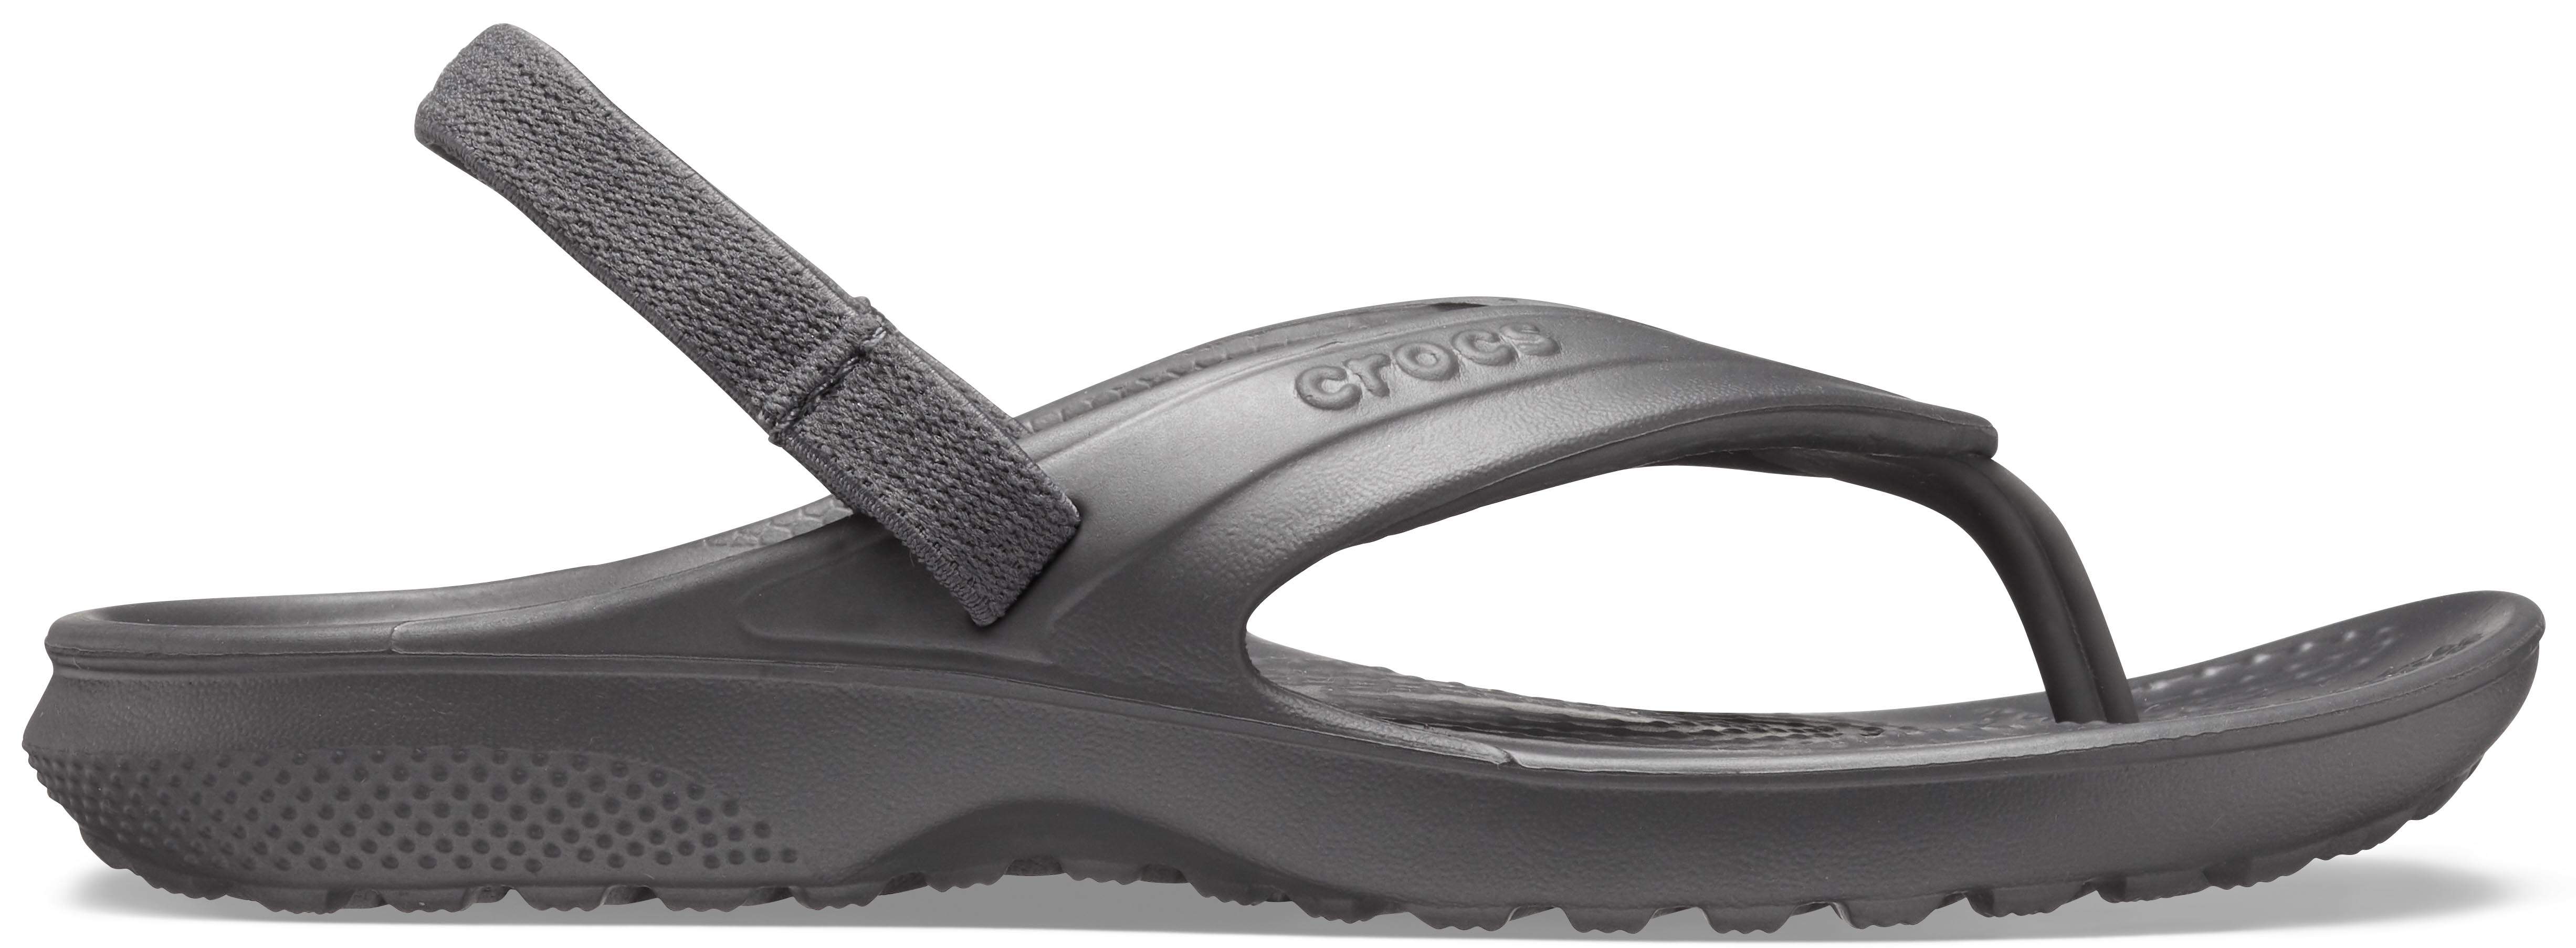 crocs classic flip flop